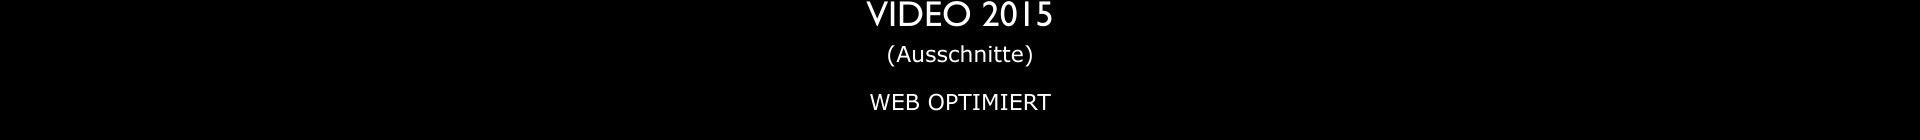 VIDEO 2015 